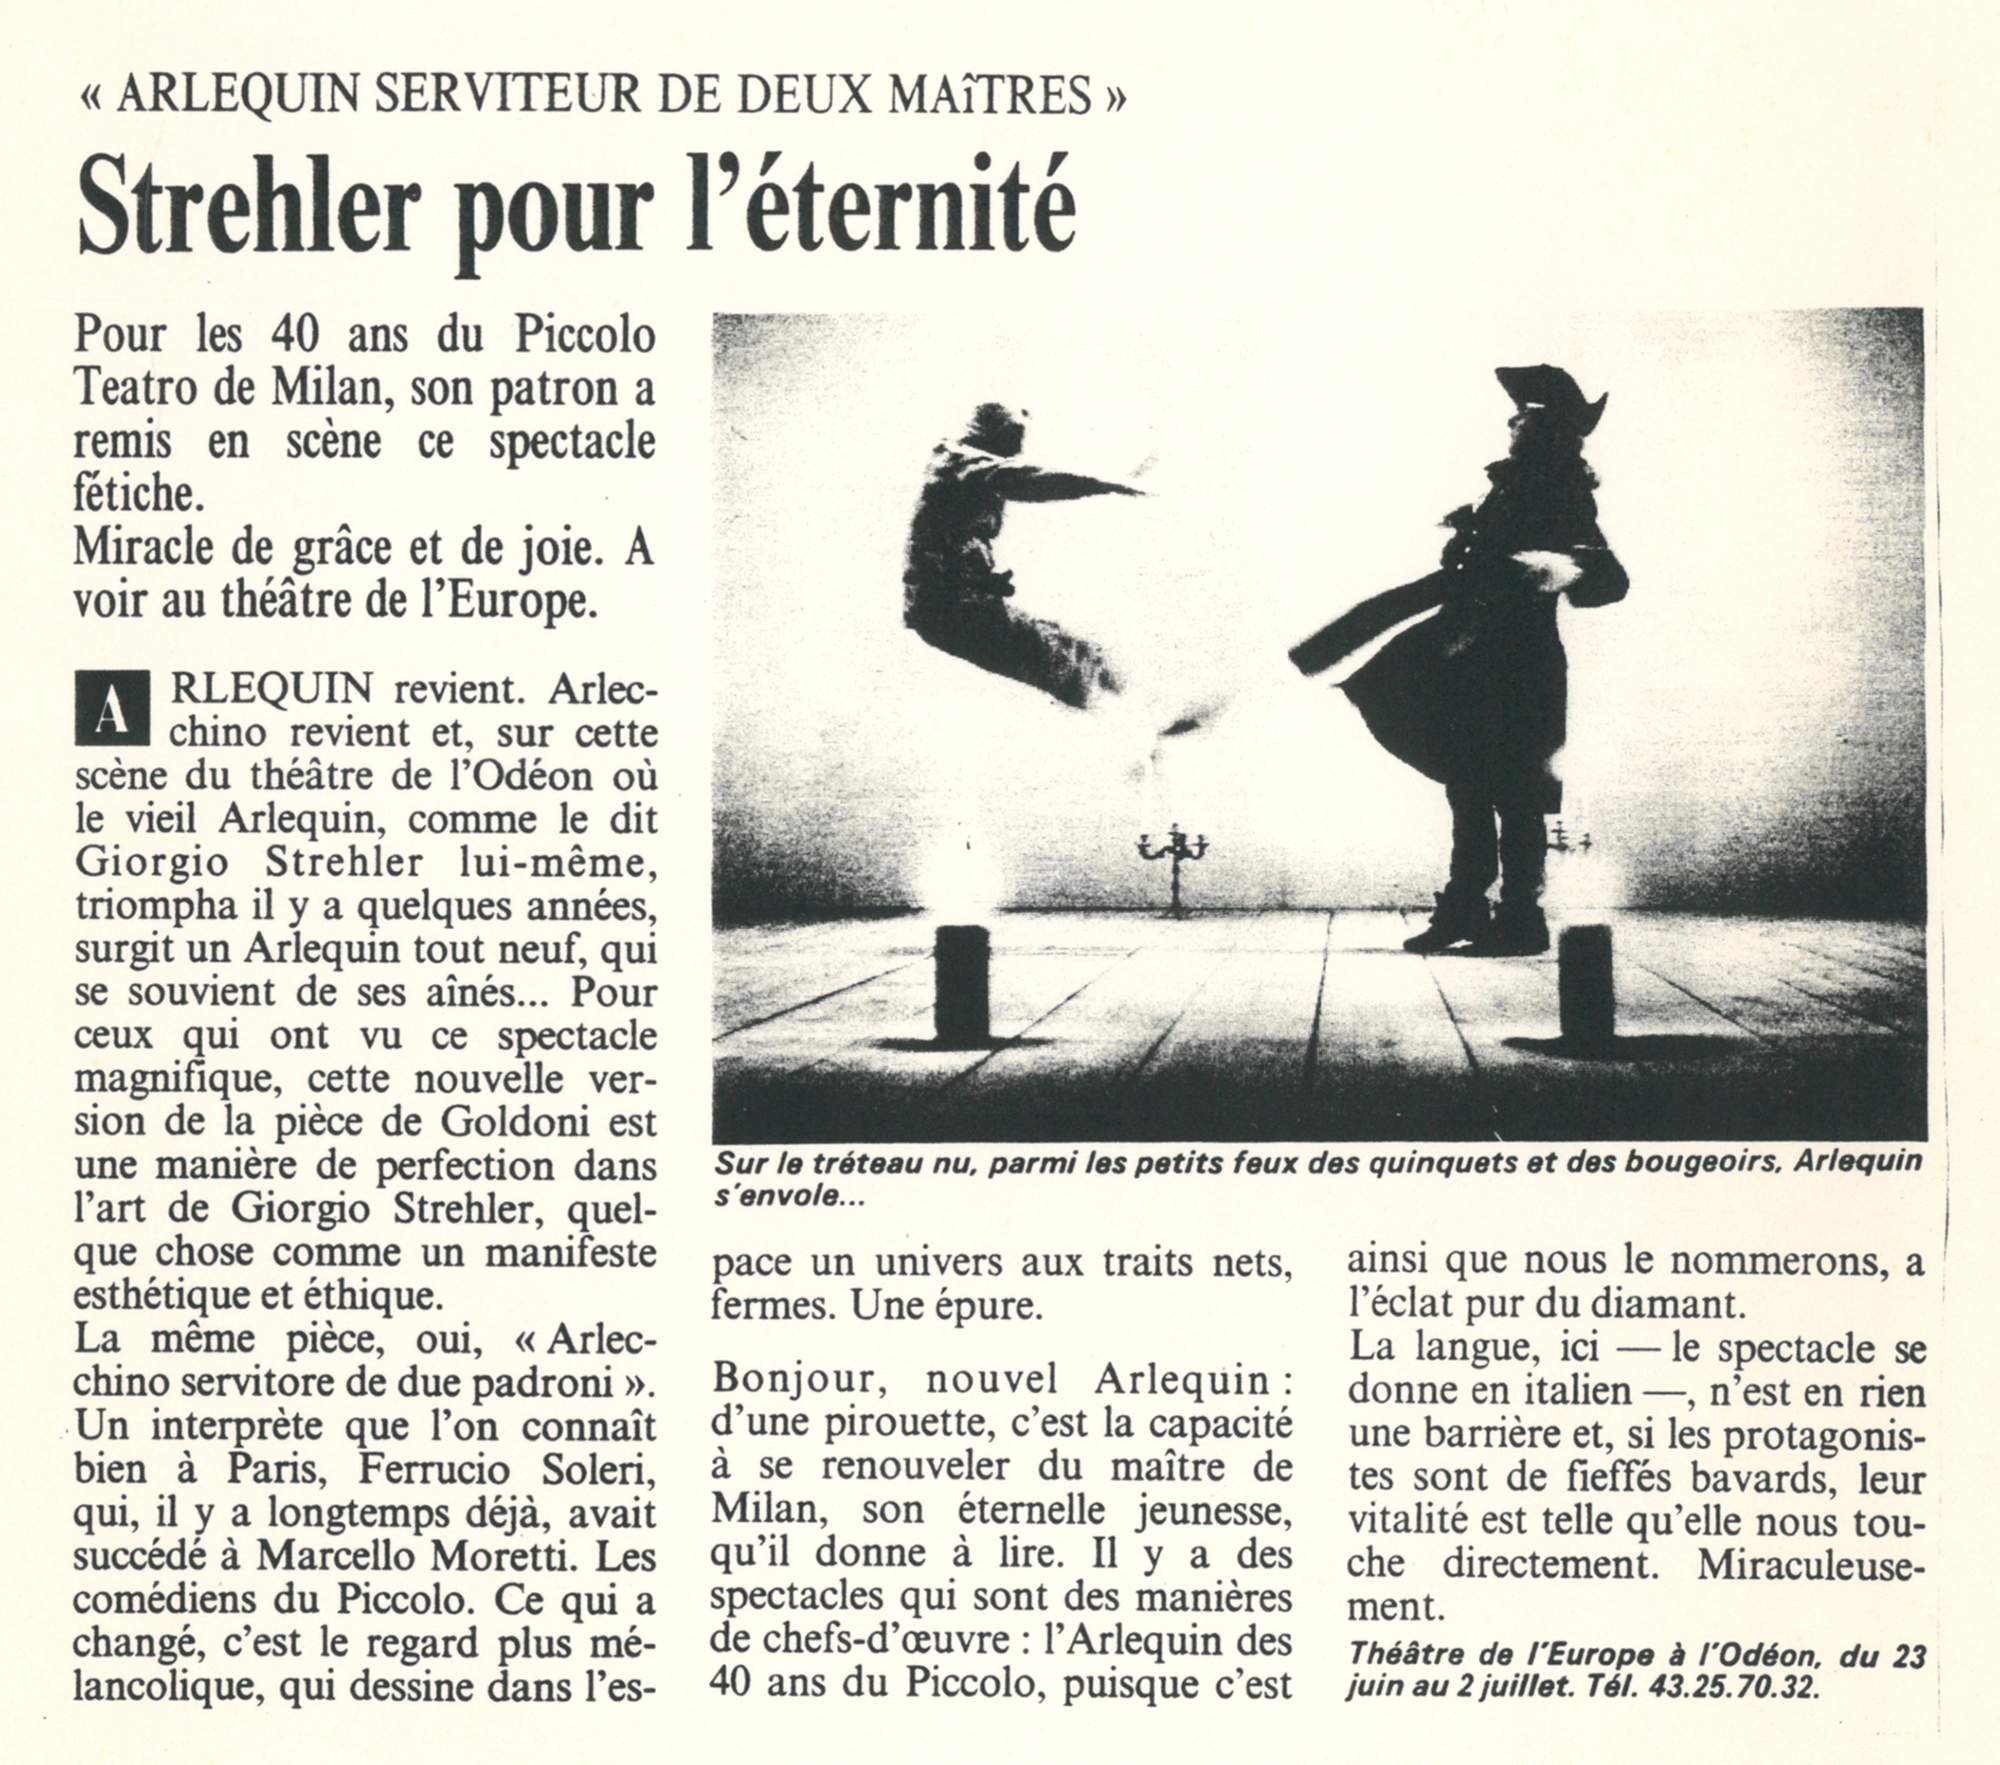  “Le Quotidien” (Parigi), 21 giugno 1989 - Archivio Piccolo Teatro di Milano 